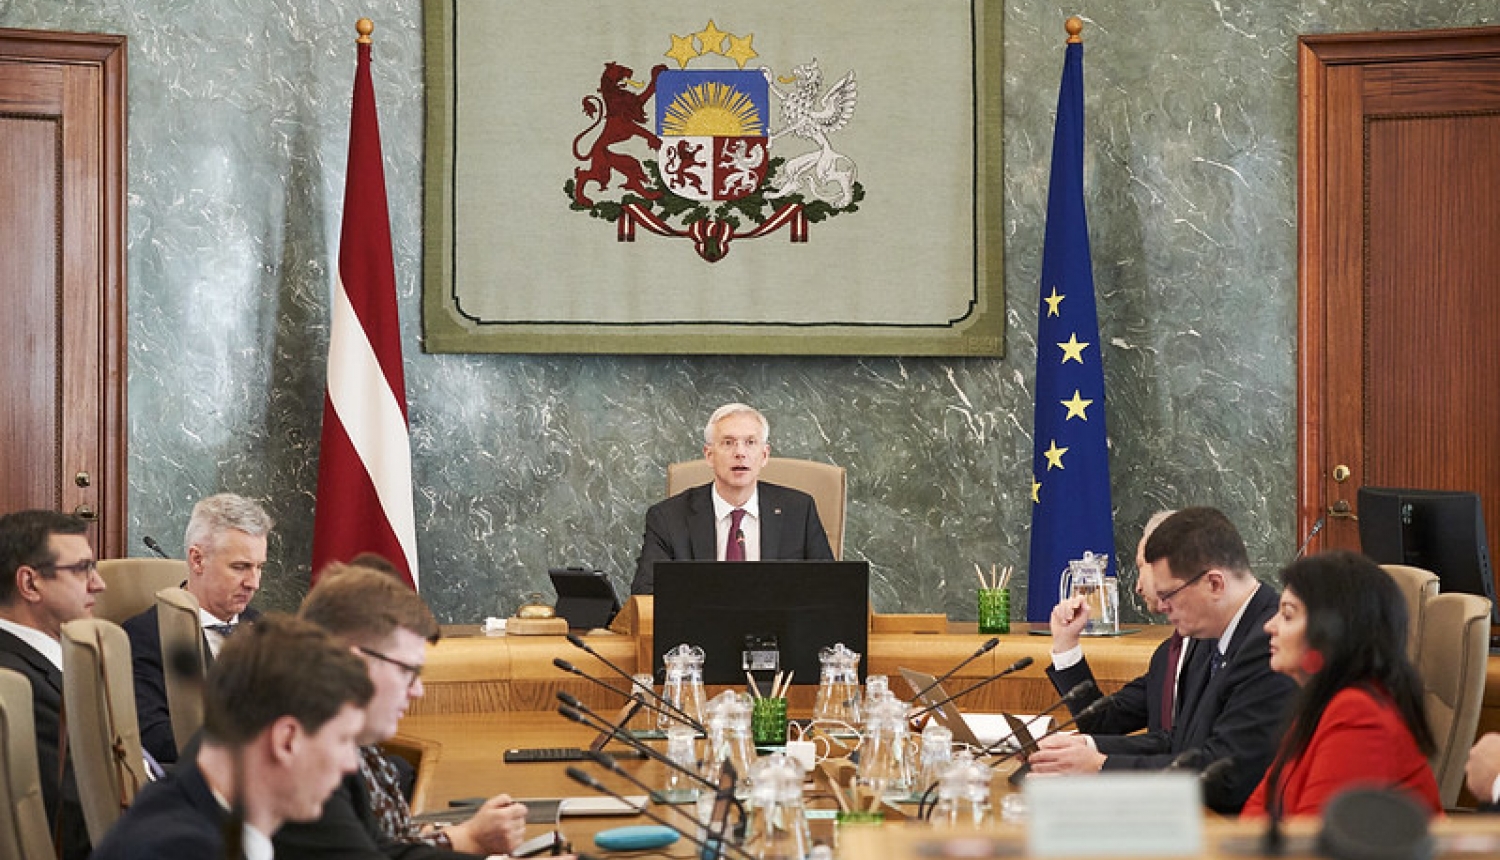 VARAM iepazīstina ar nozares atbildībām atvērtās pārvaldības veicināšanā Latvijā